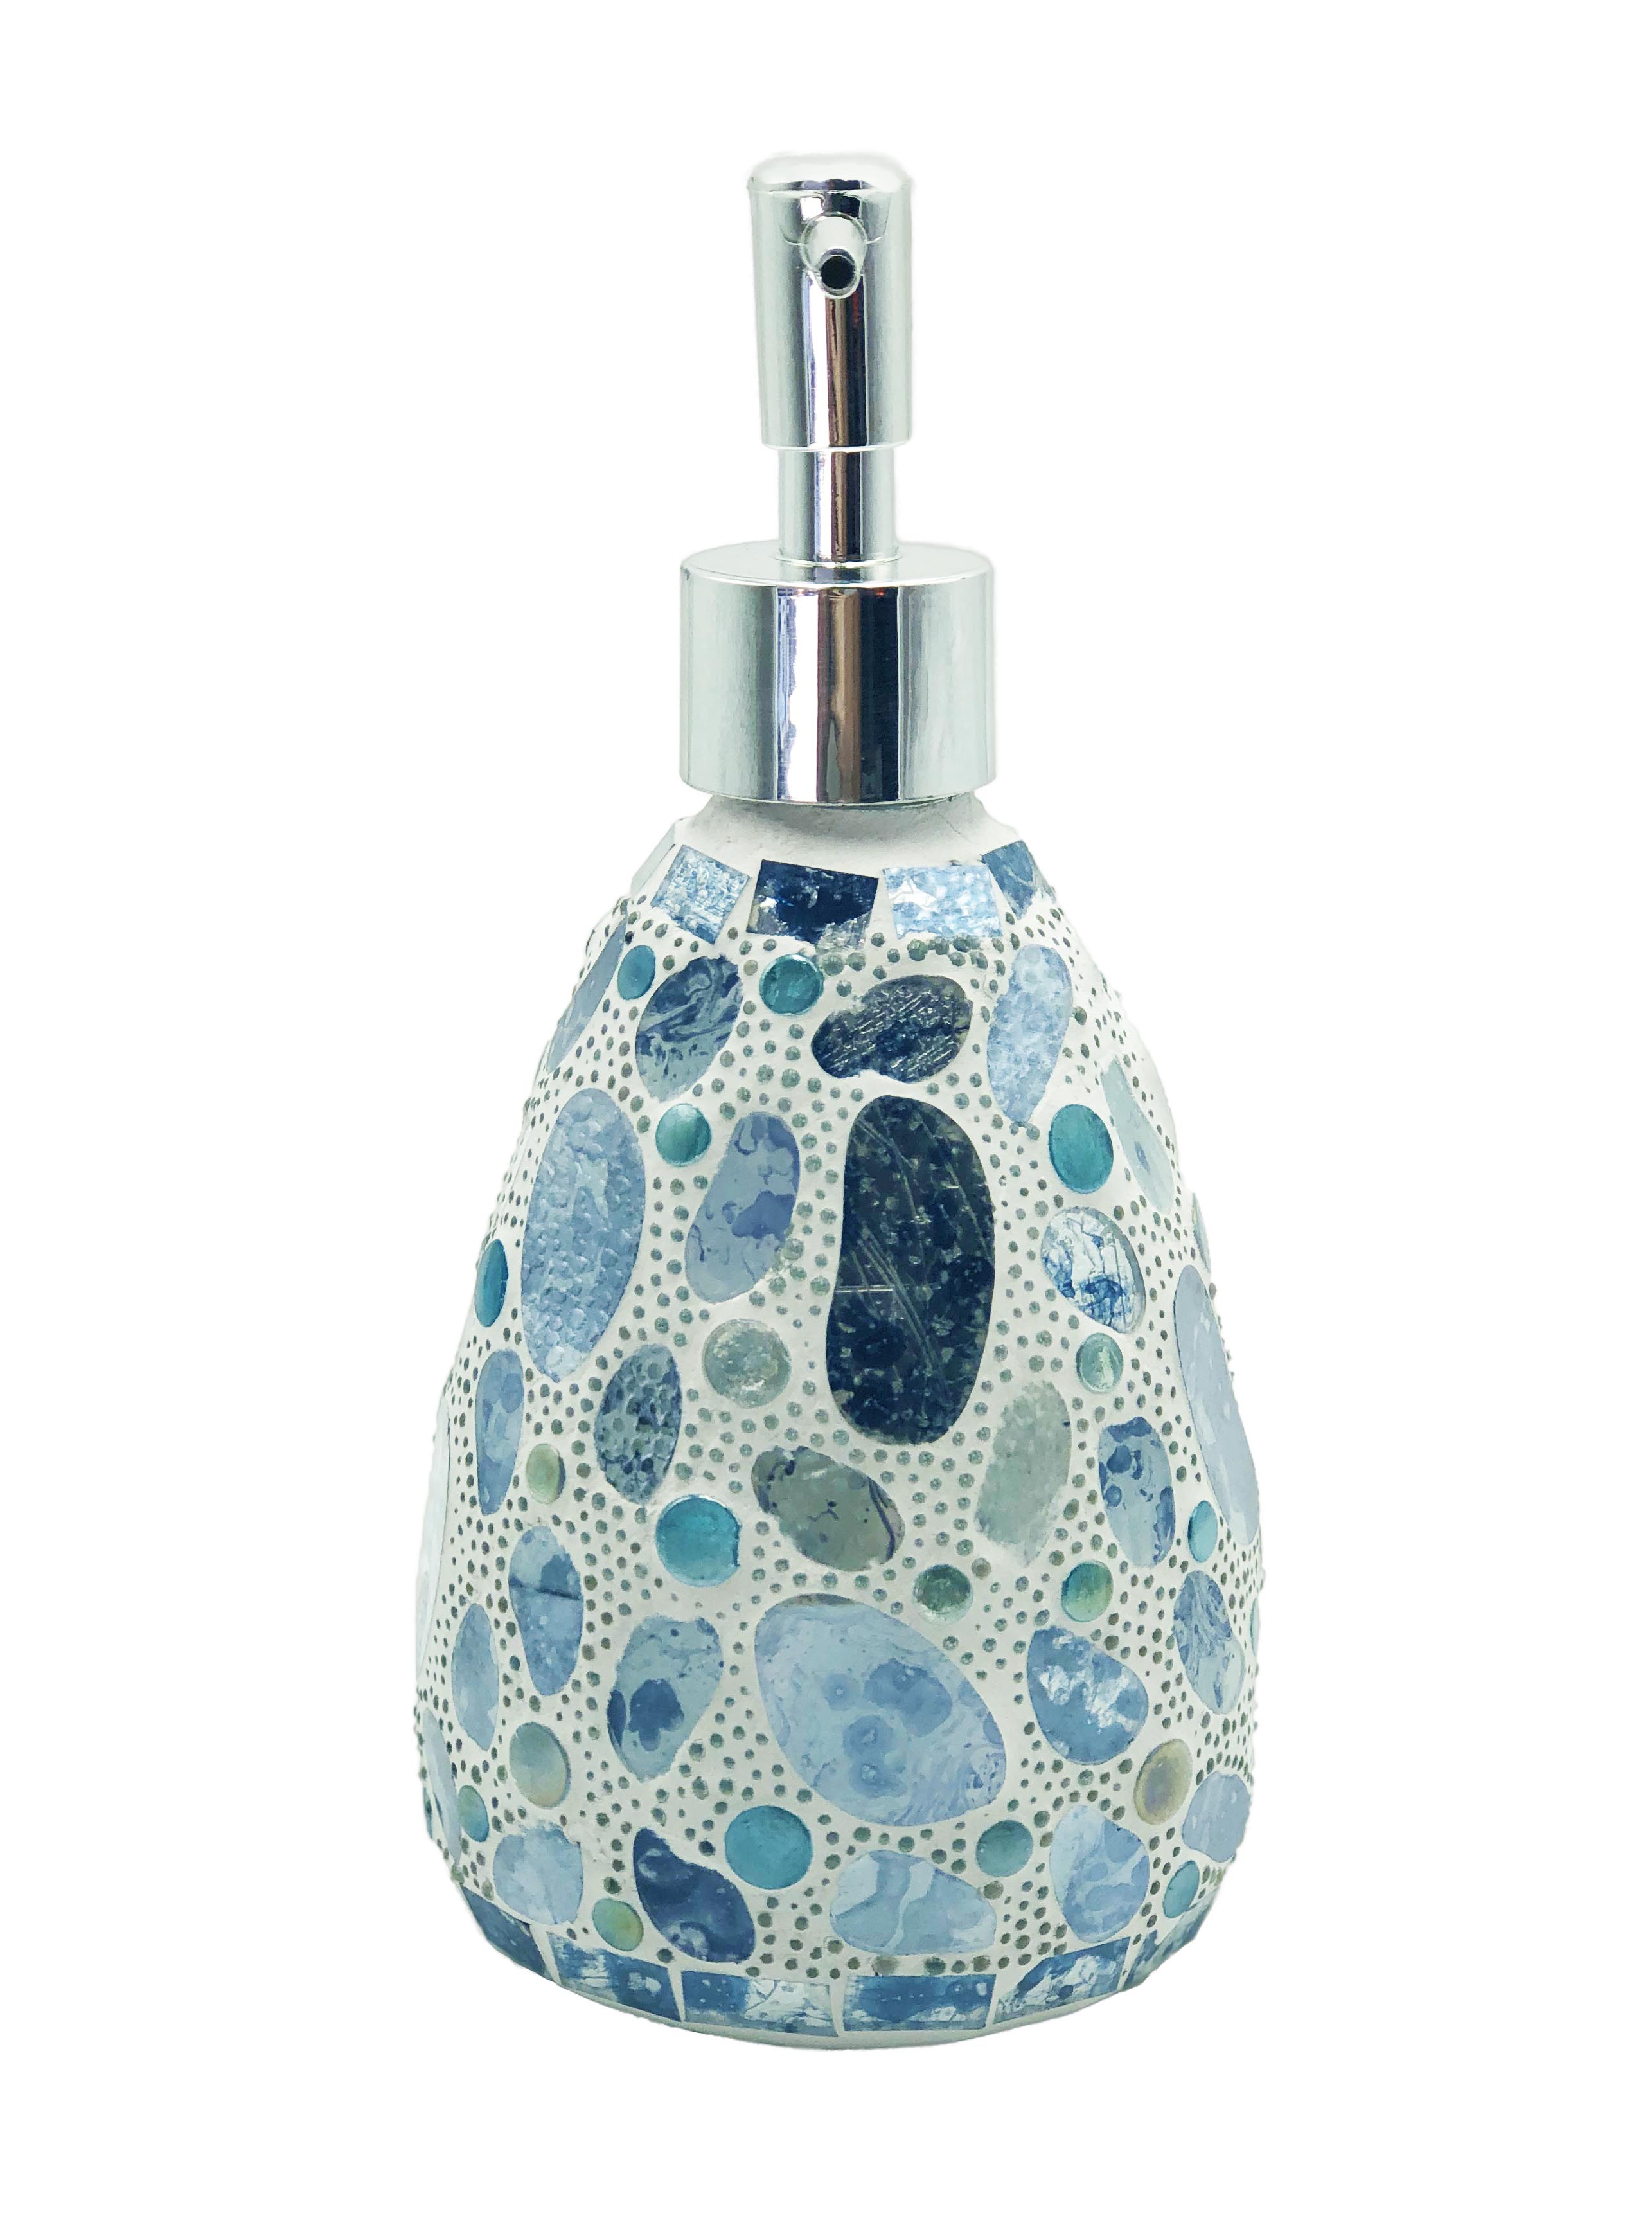 Aqua Pebble Glass Mosaic Soap Pump